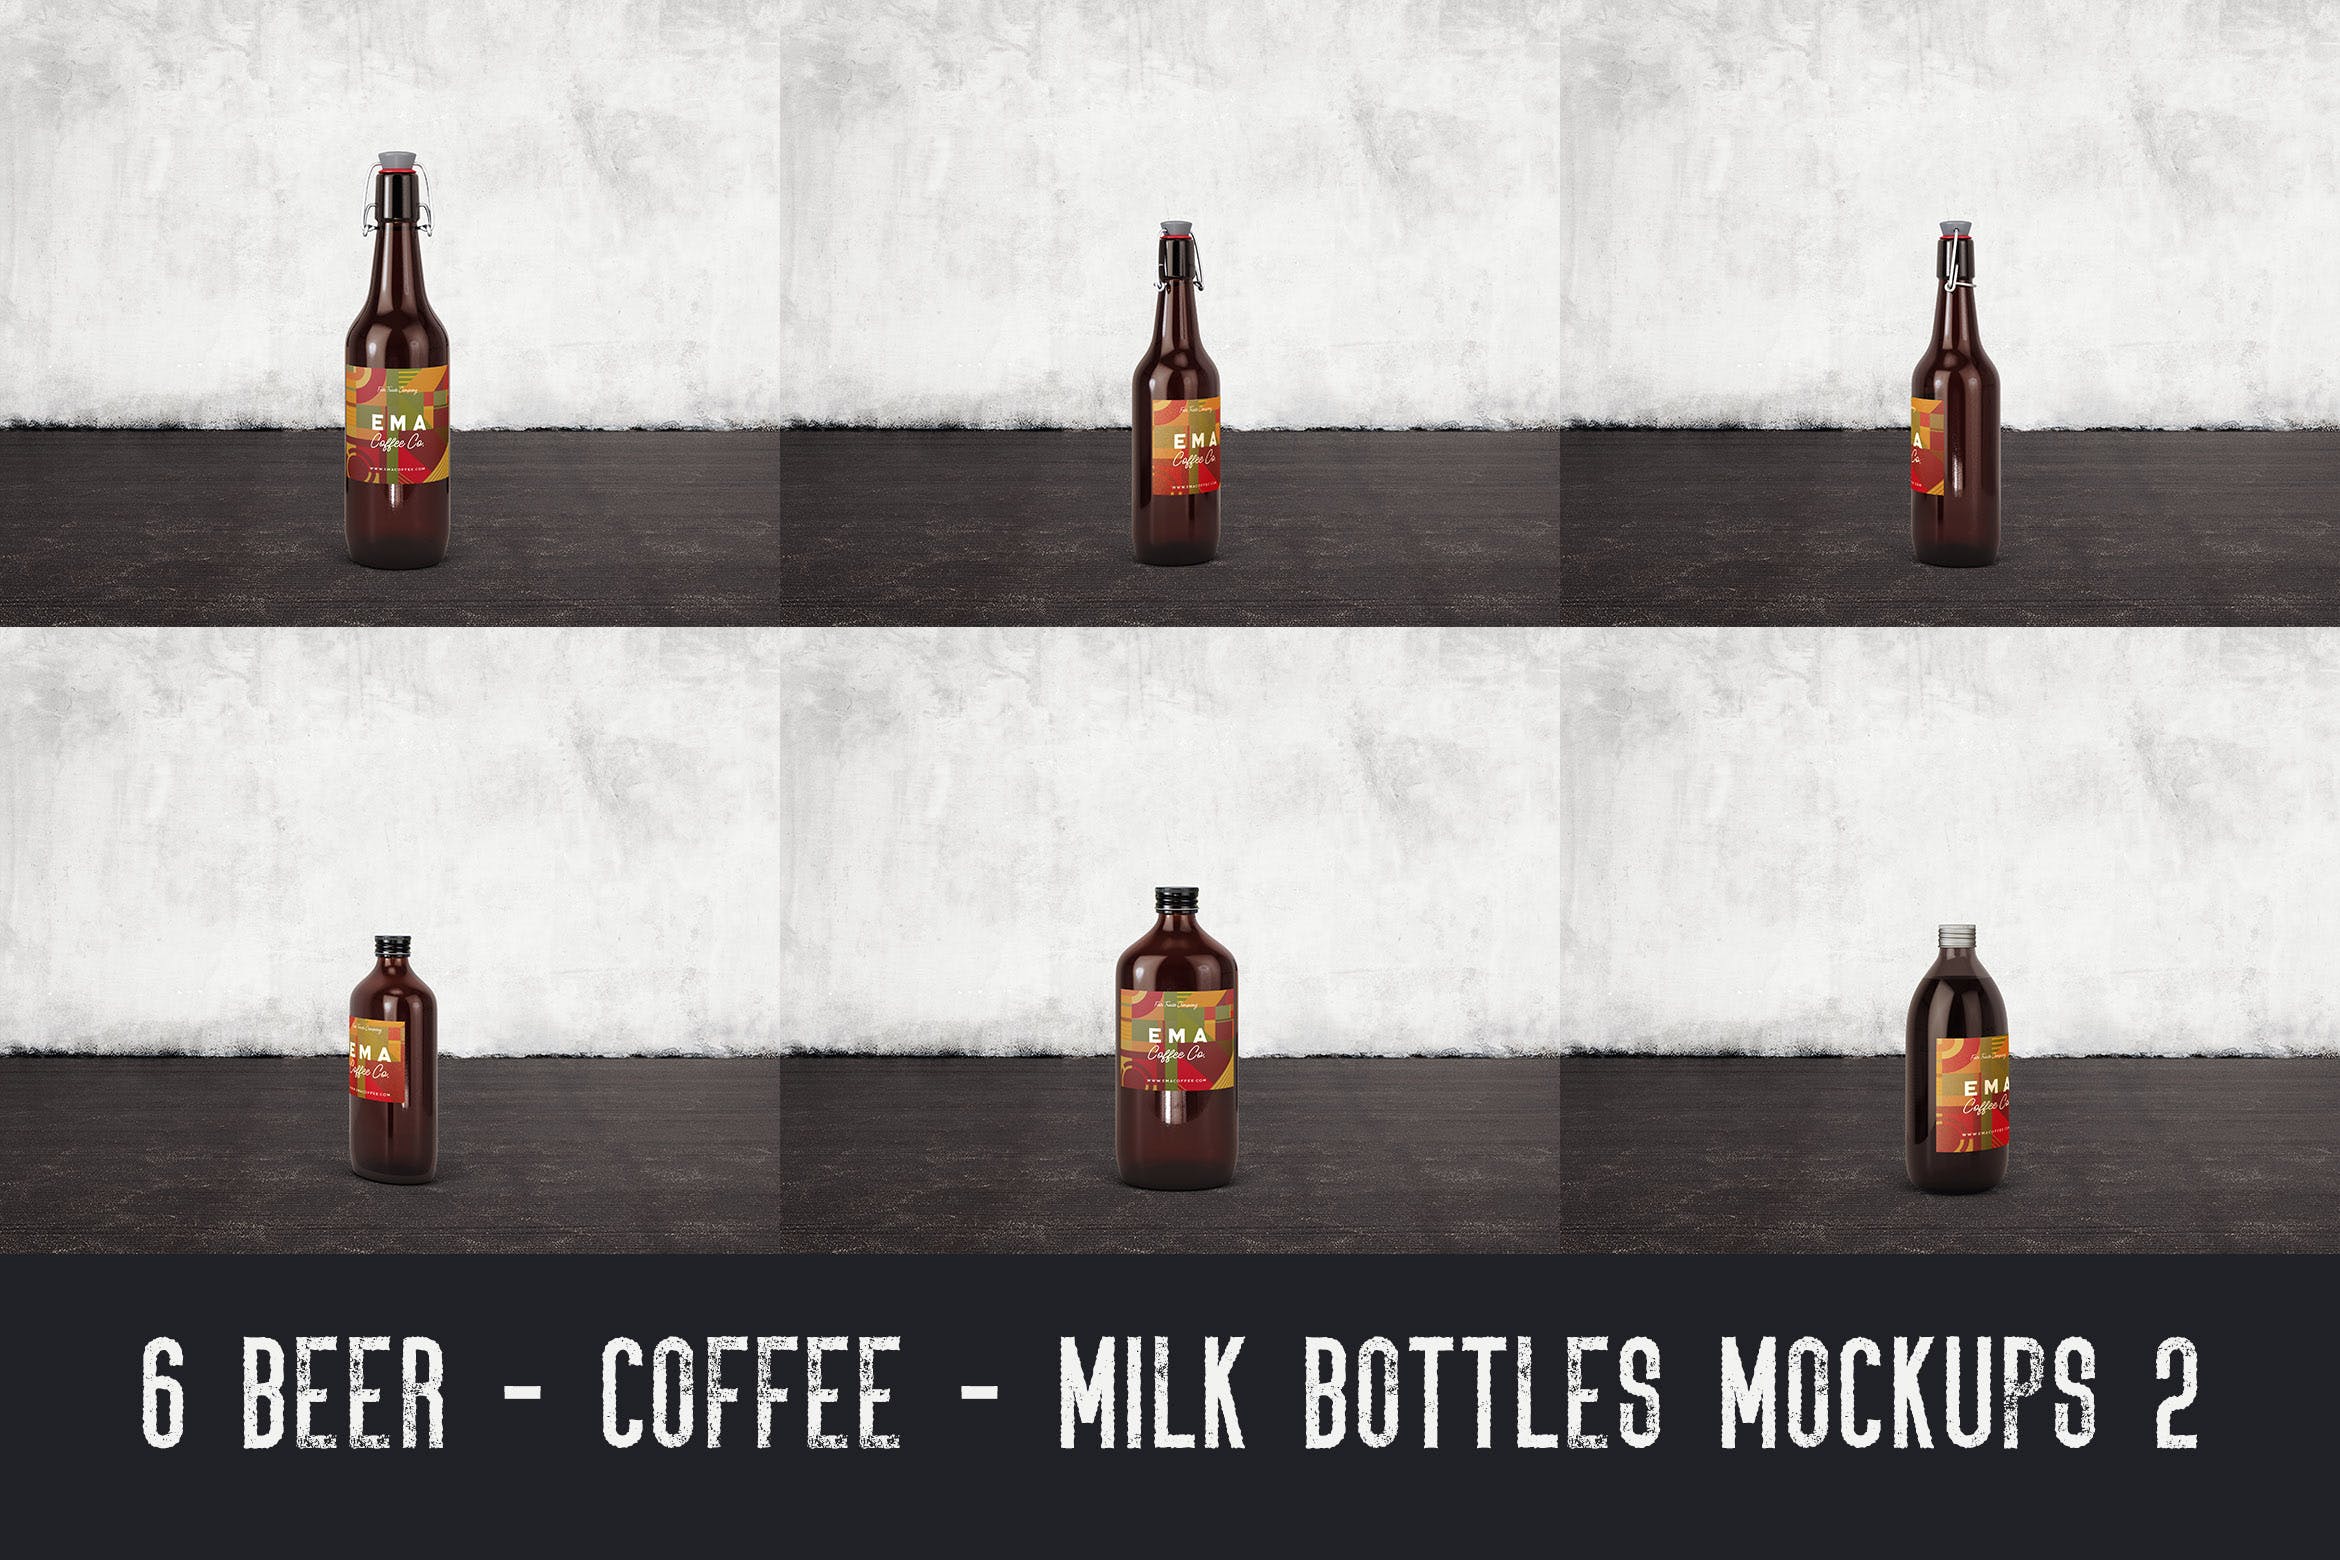 6个啤酒/咖啡/牛奶瓶外观设计第一素材精选v2 6 Beer Coffee Milk Bottles Mockups 2插图